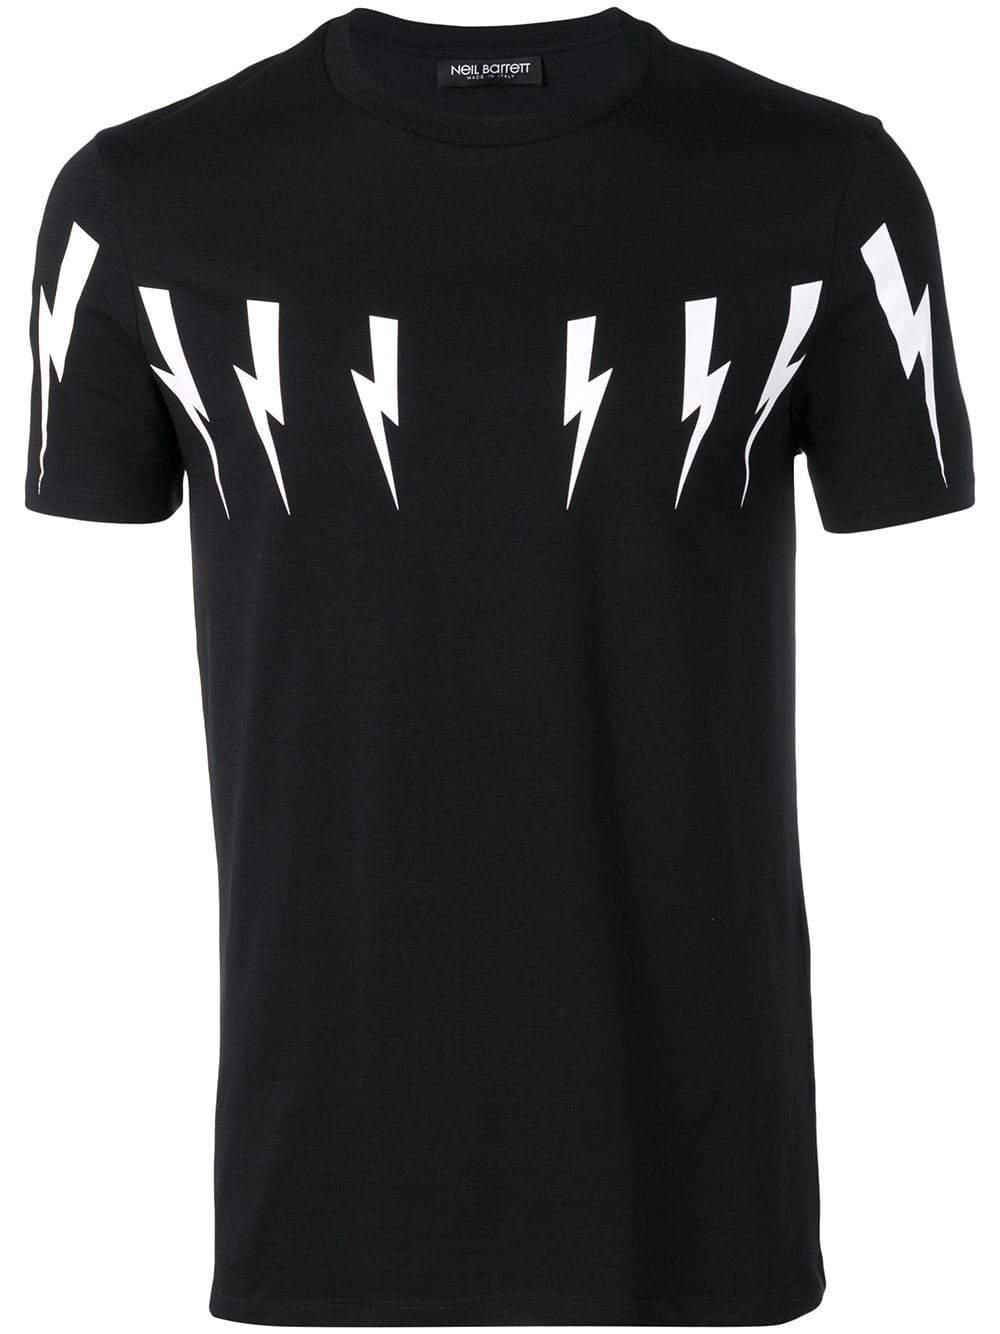 Lyst - Neil Barrett Bolt T-shirt in Black for Men - Save 22%